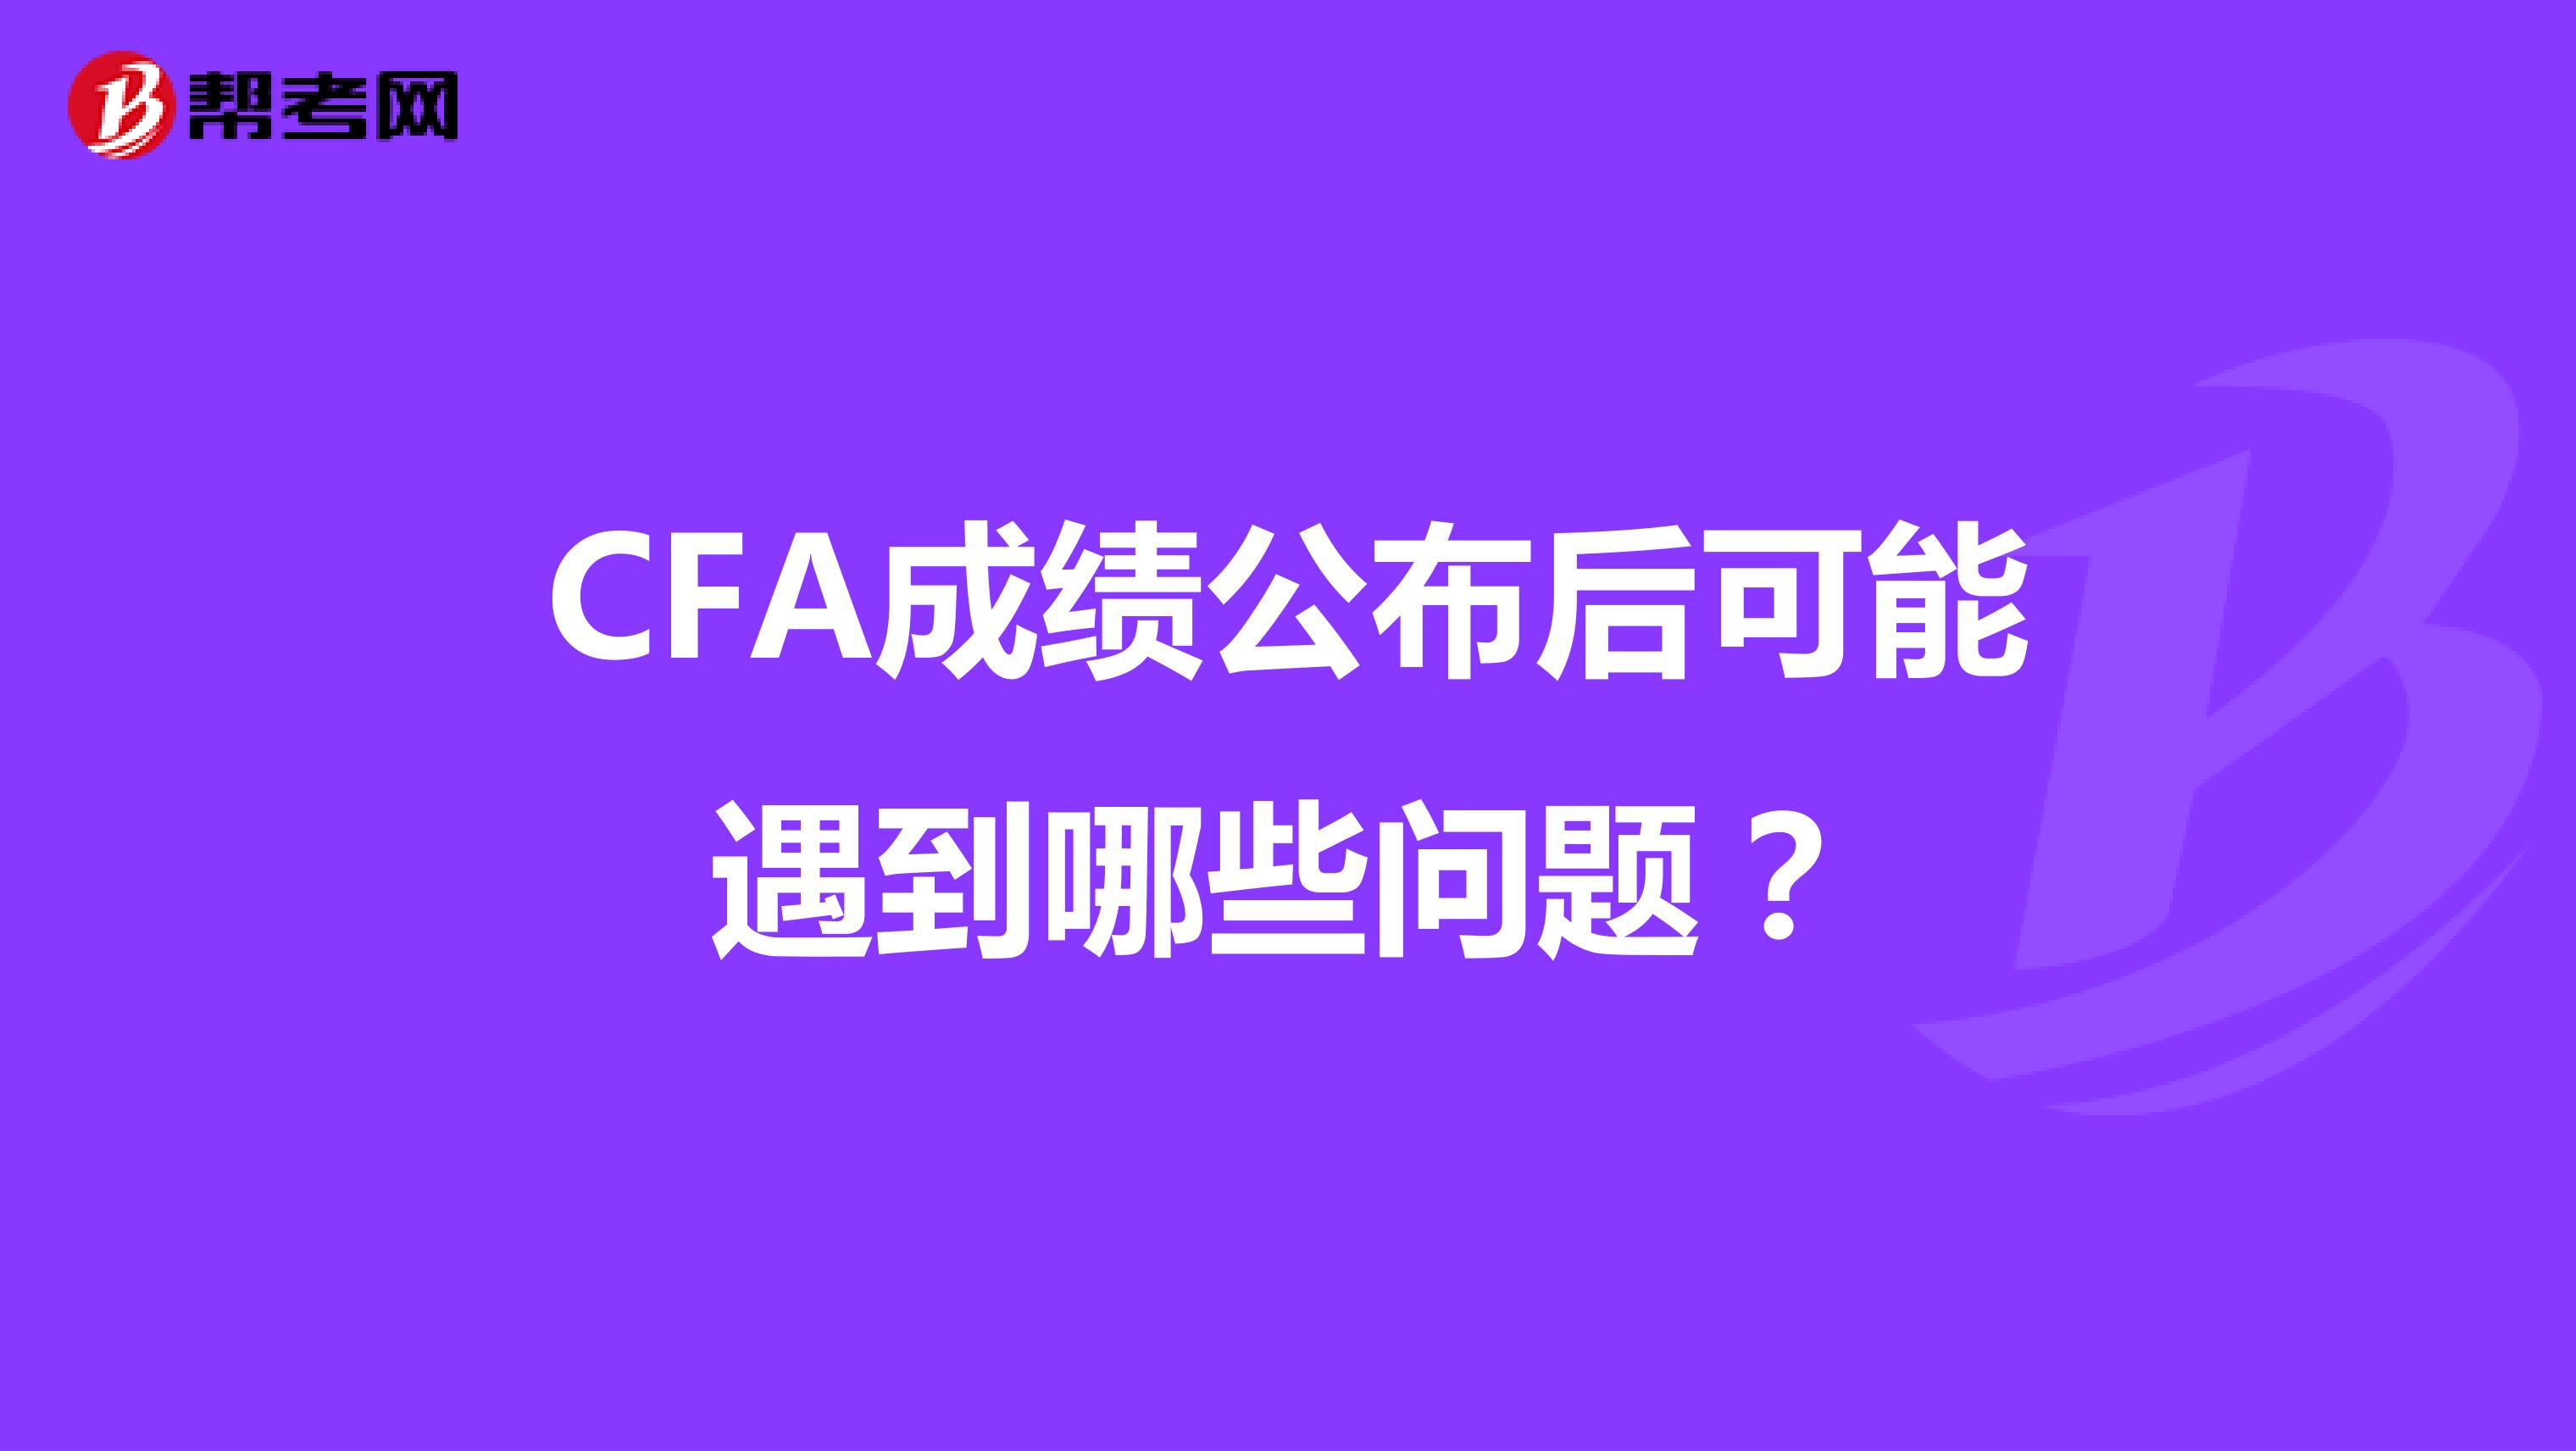 CFA成绩公布后可能遇到哪些问题？